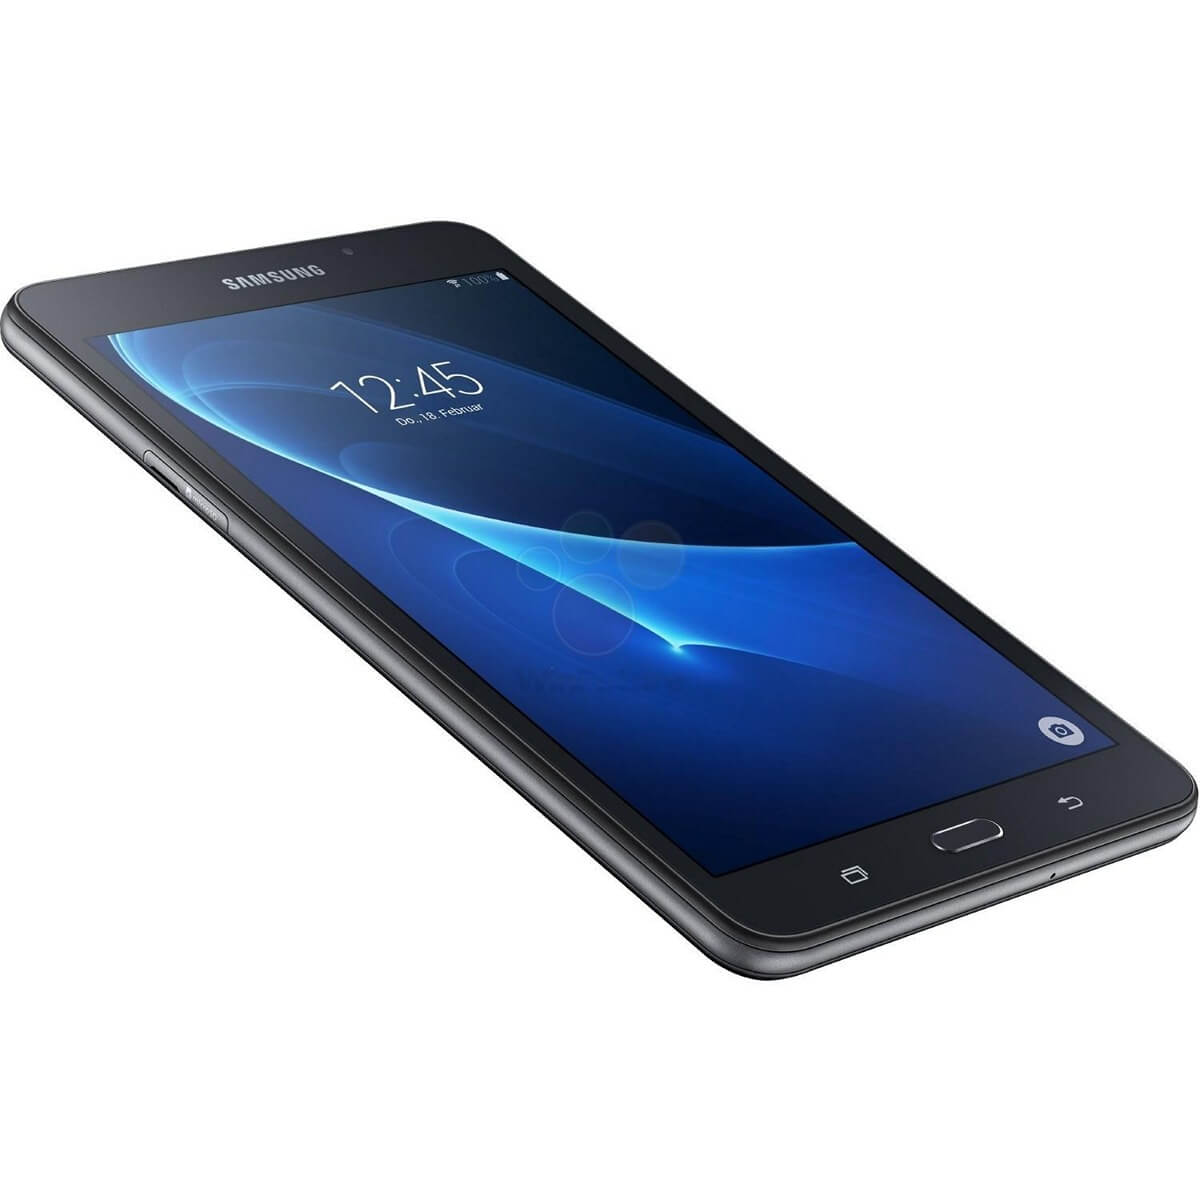 น้องใหม่ !!! Samsung จะปล่อย Galaxy Tab A 7.0 แท็บเล็ตขนาด 7 นิ้วสเปคกลาง แต่ !!! ไม่มีปากกา S Pen !!!